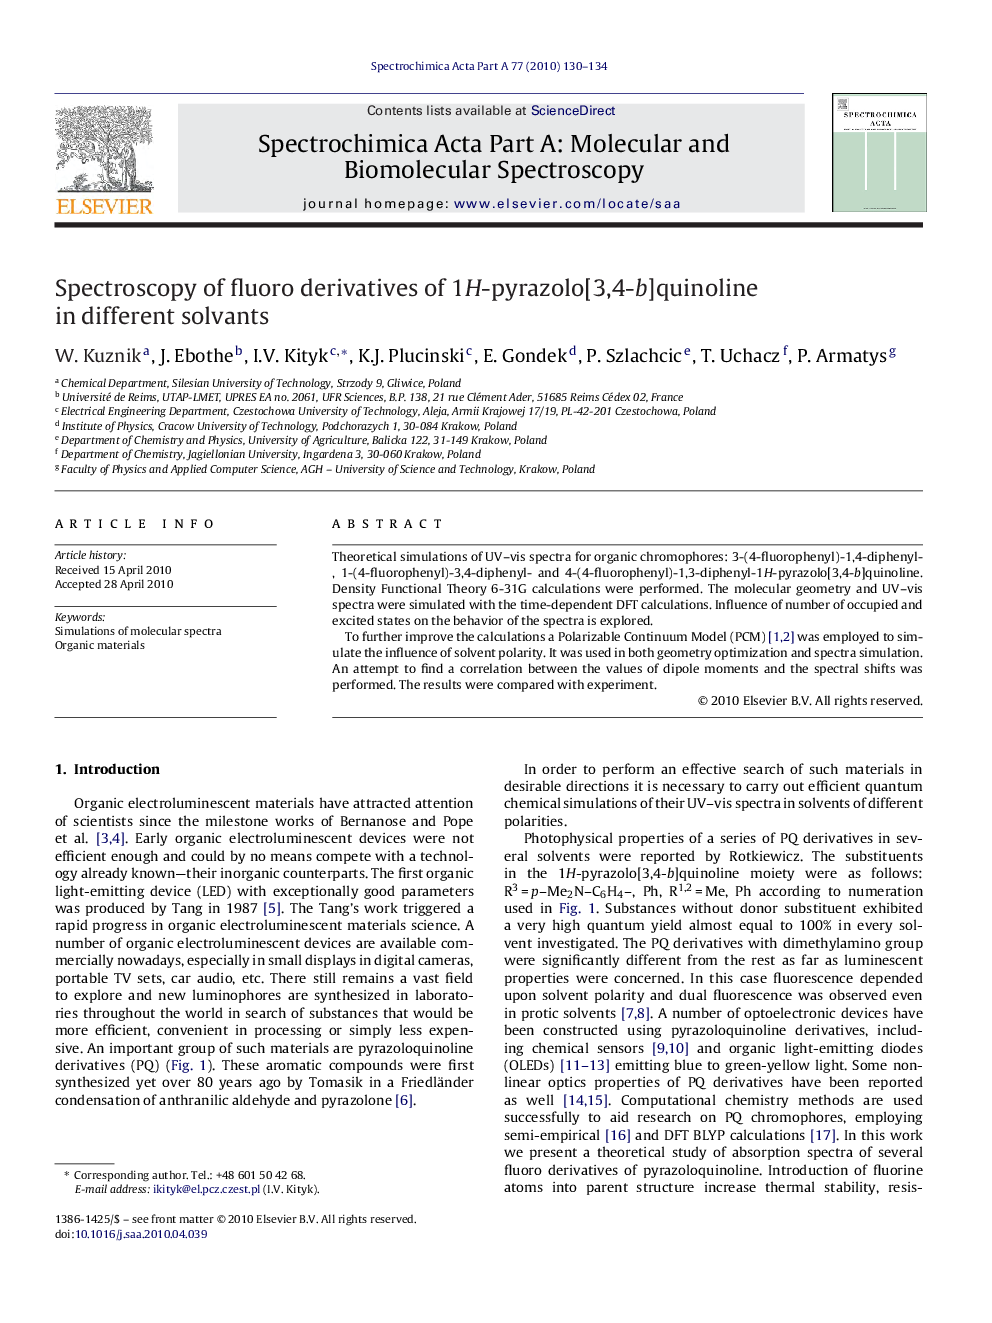 Spectroscopy of fluoro derivatives of 1H-pyrazolo[3,4-b]quinoline in different solvants